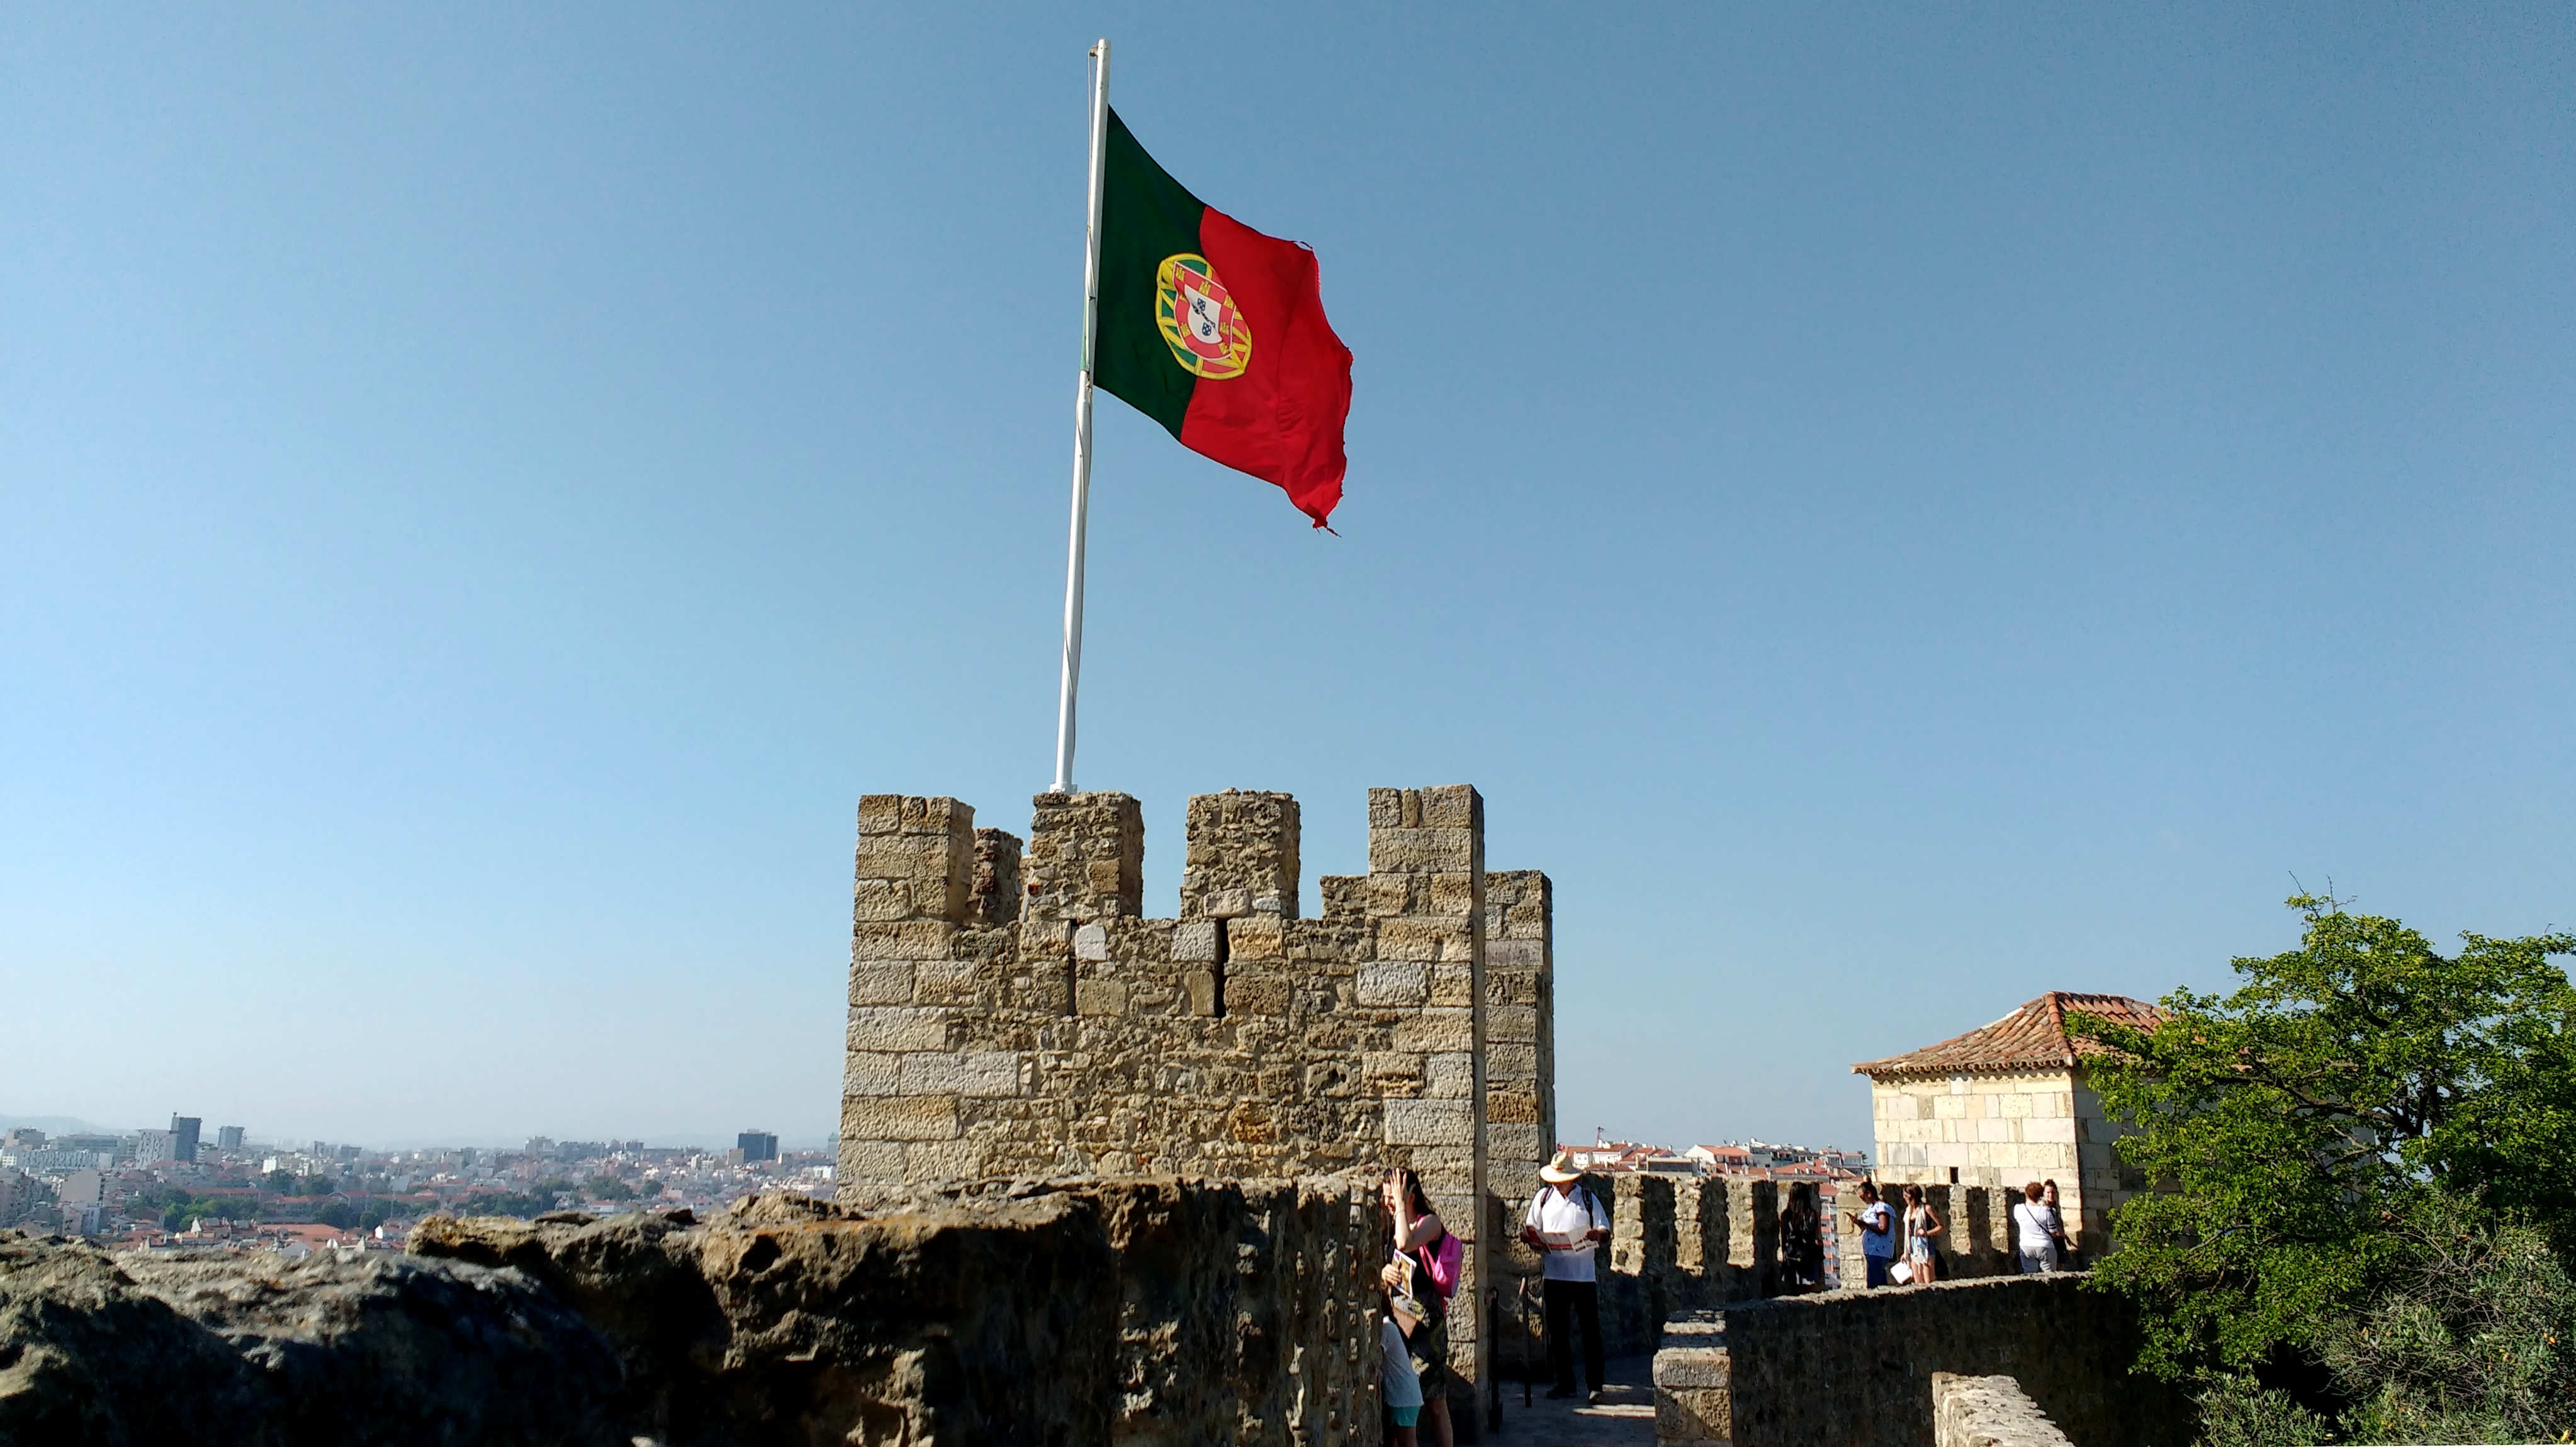 Castelo de São Jorge de Lisboa